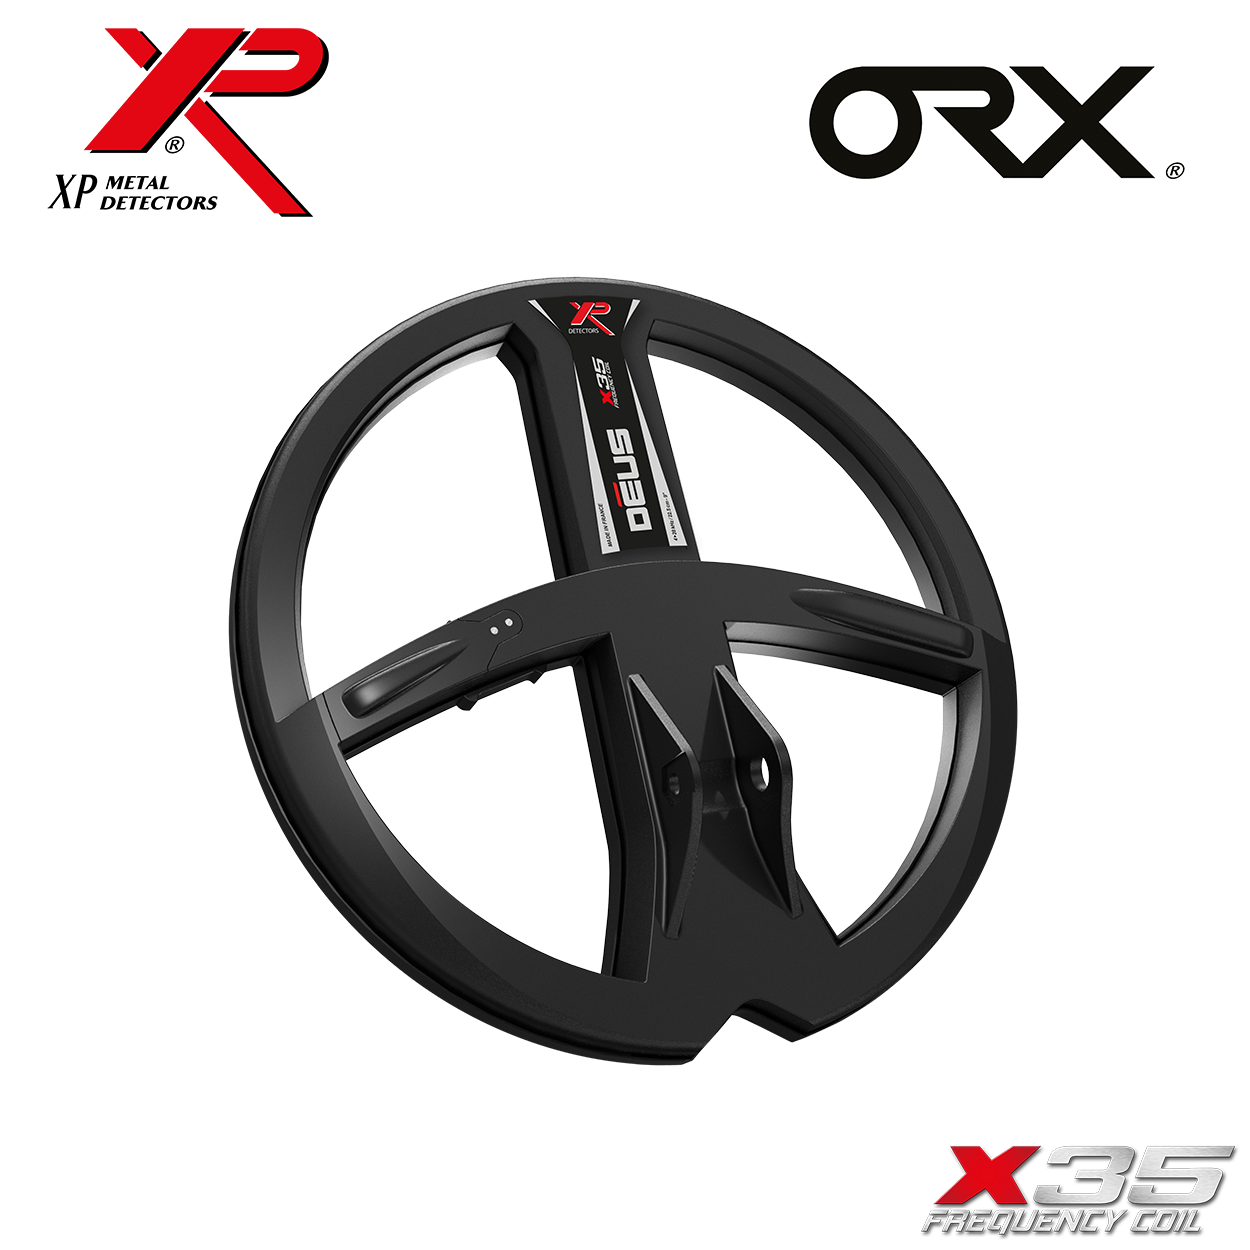 XP ORX X35 RC 22 Metalldetektor WSA